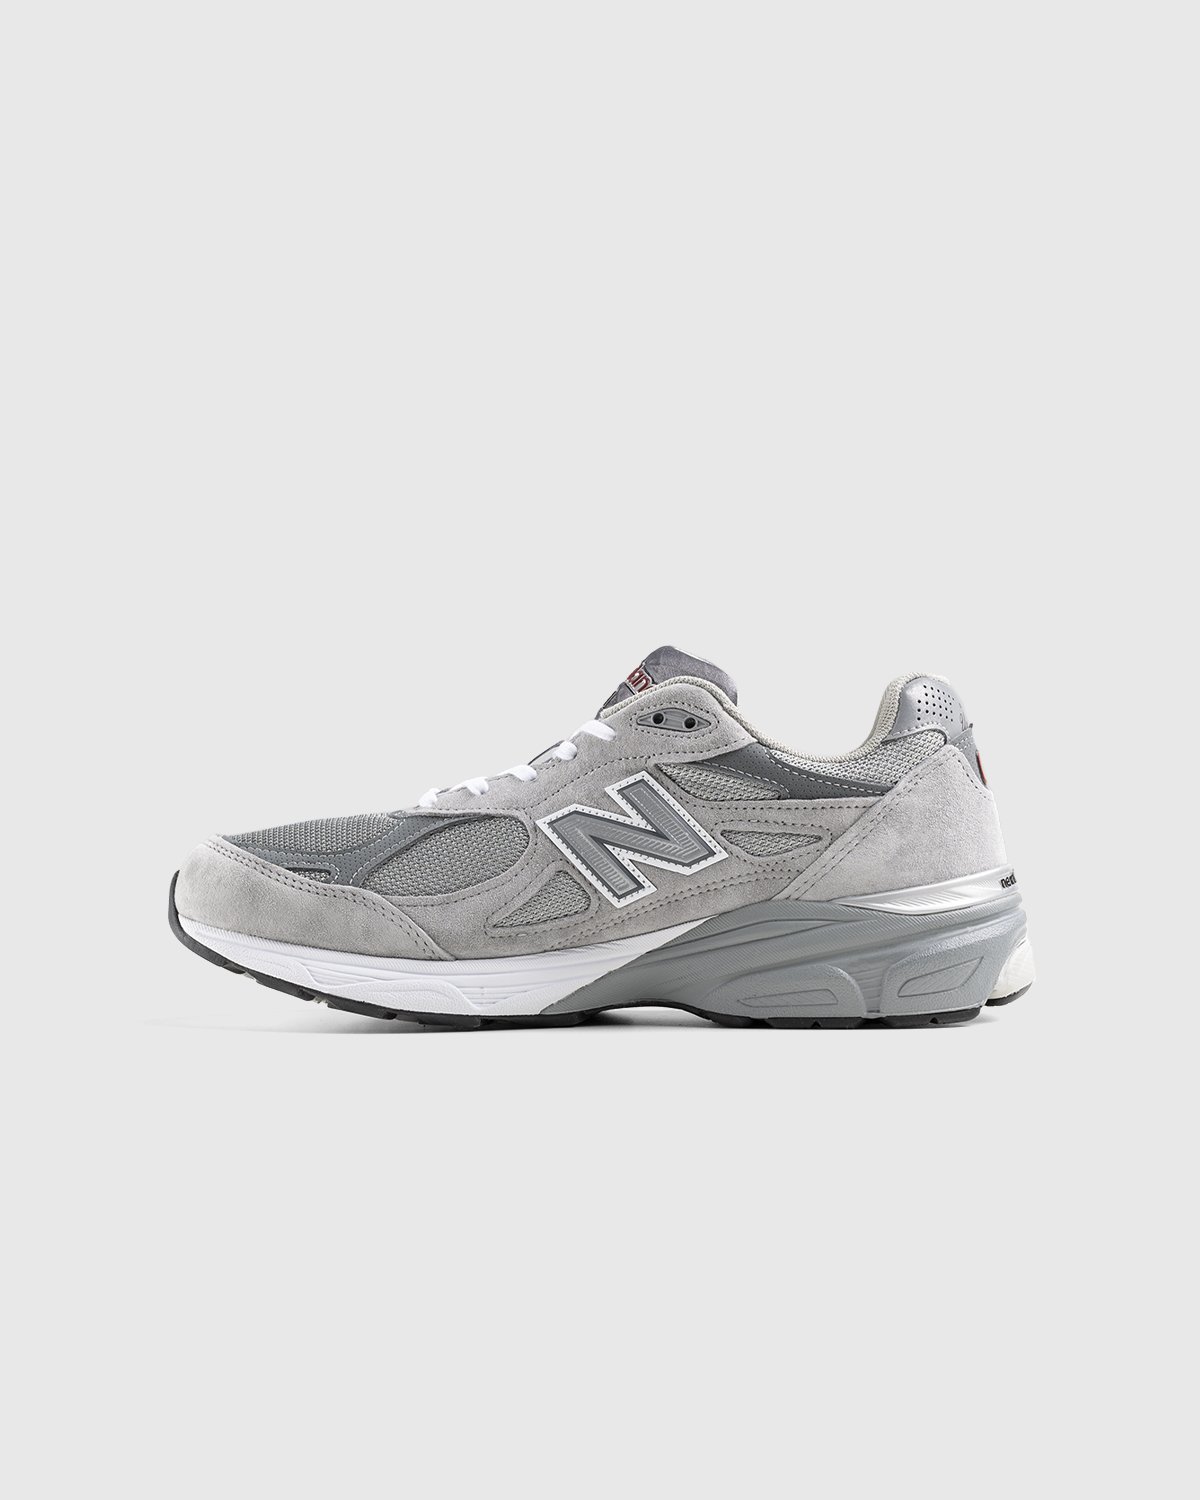 New Balance - M990GY3 Grey - Footwear - Grey - Image 2